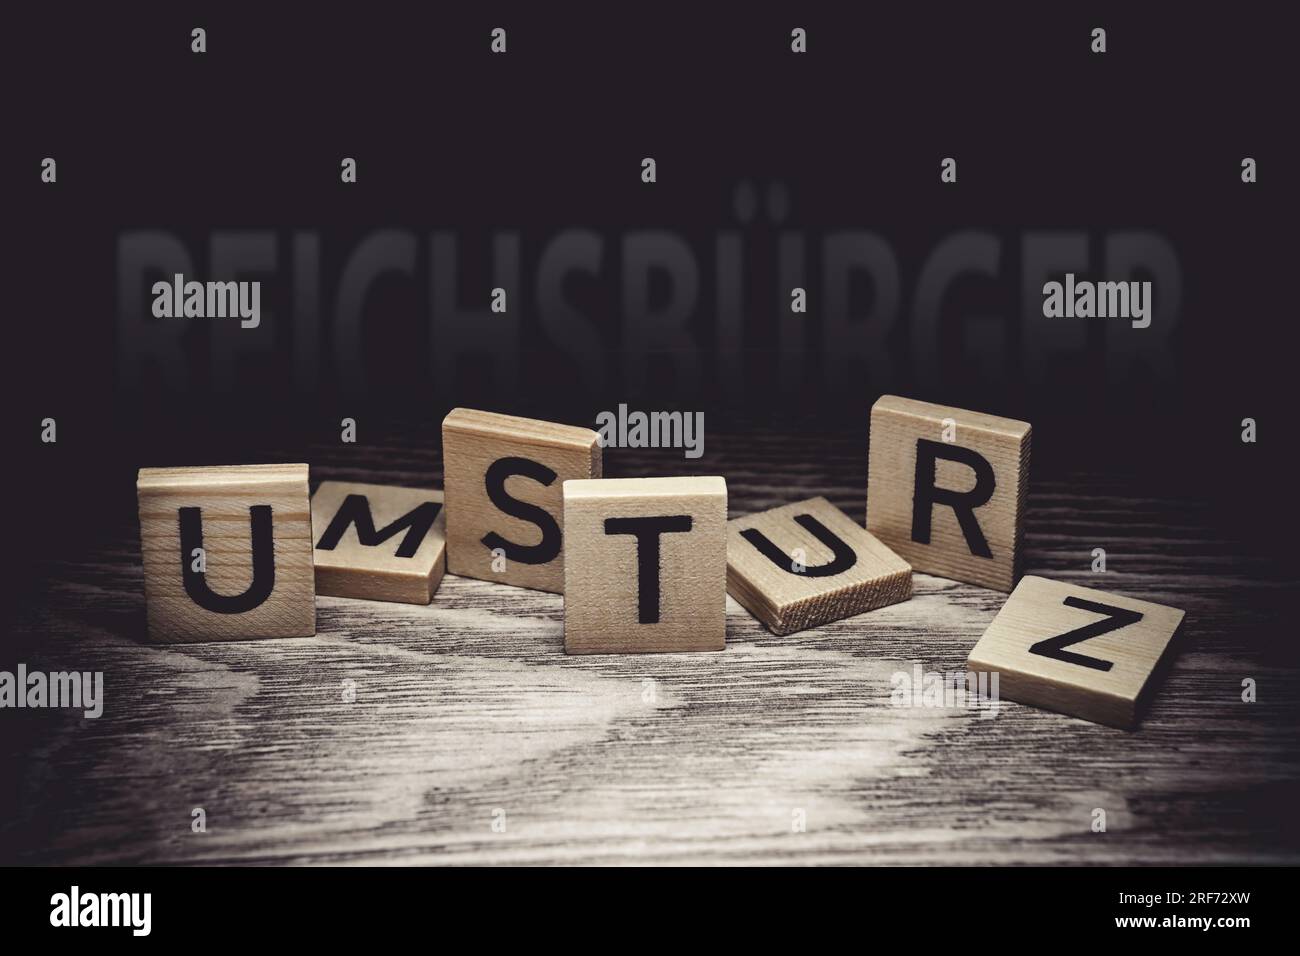 FOTOMONTAGE, Buchstaben bilden den Schriftzug Umsturz, im Hintergrund das Wort Reichsbürger Stock Photo